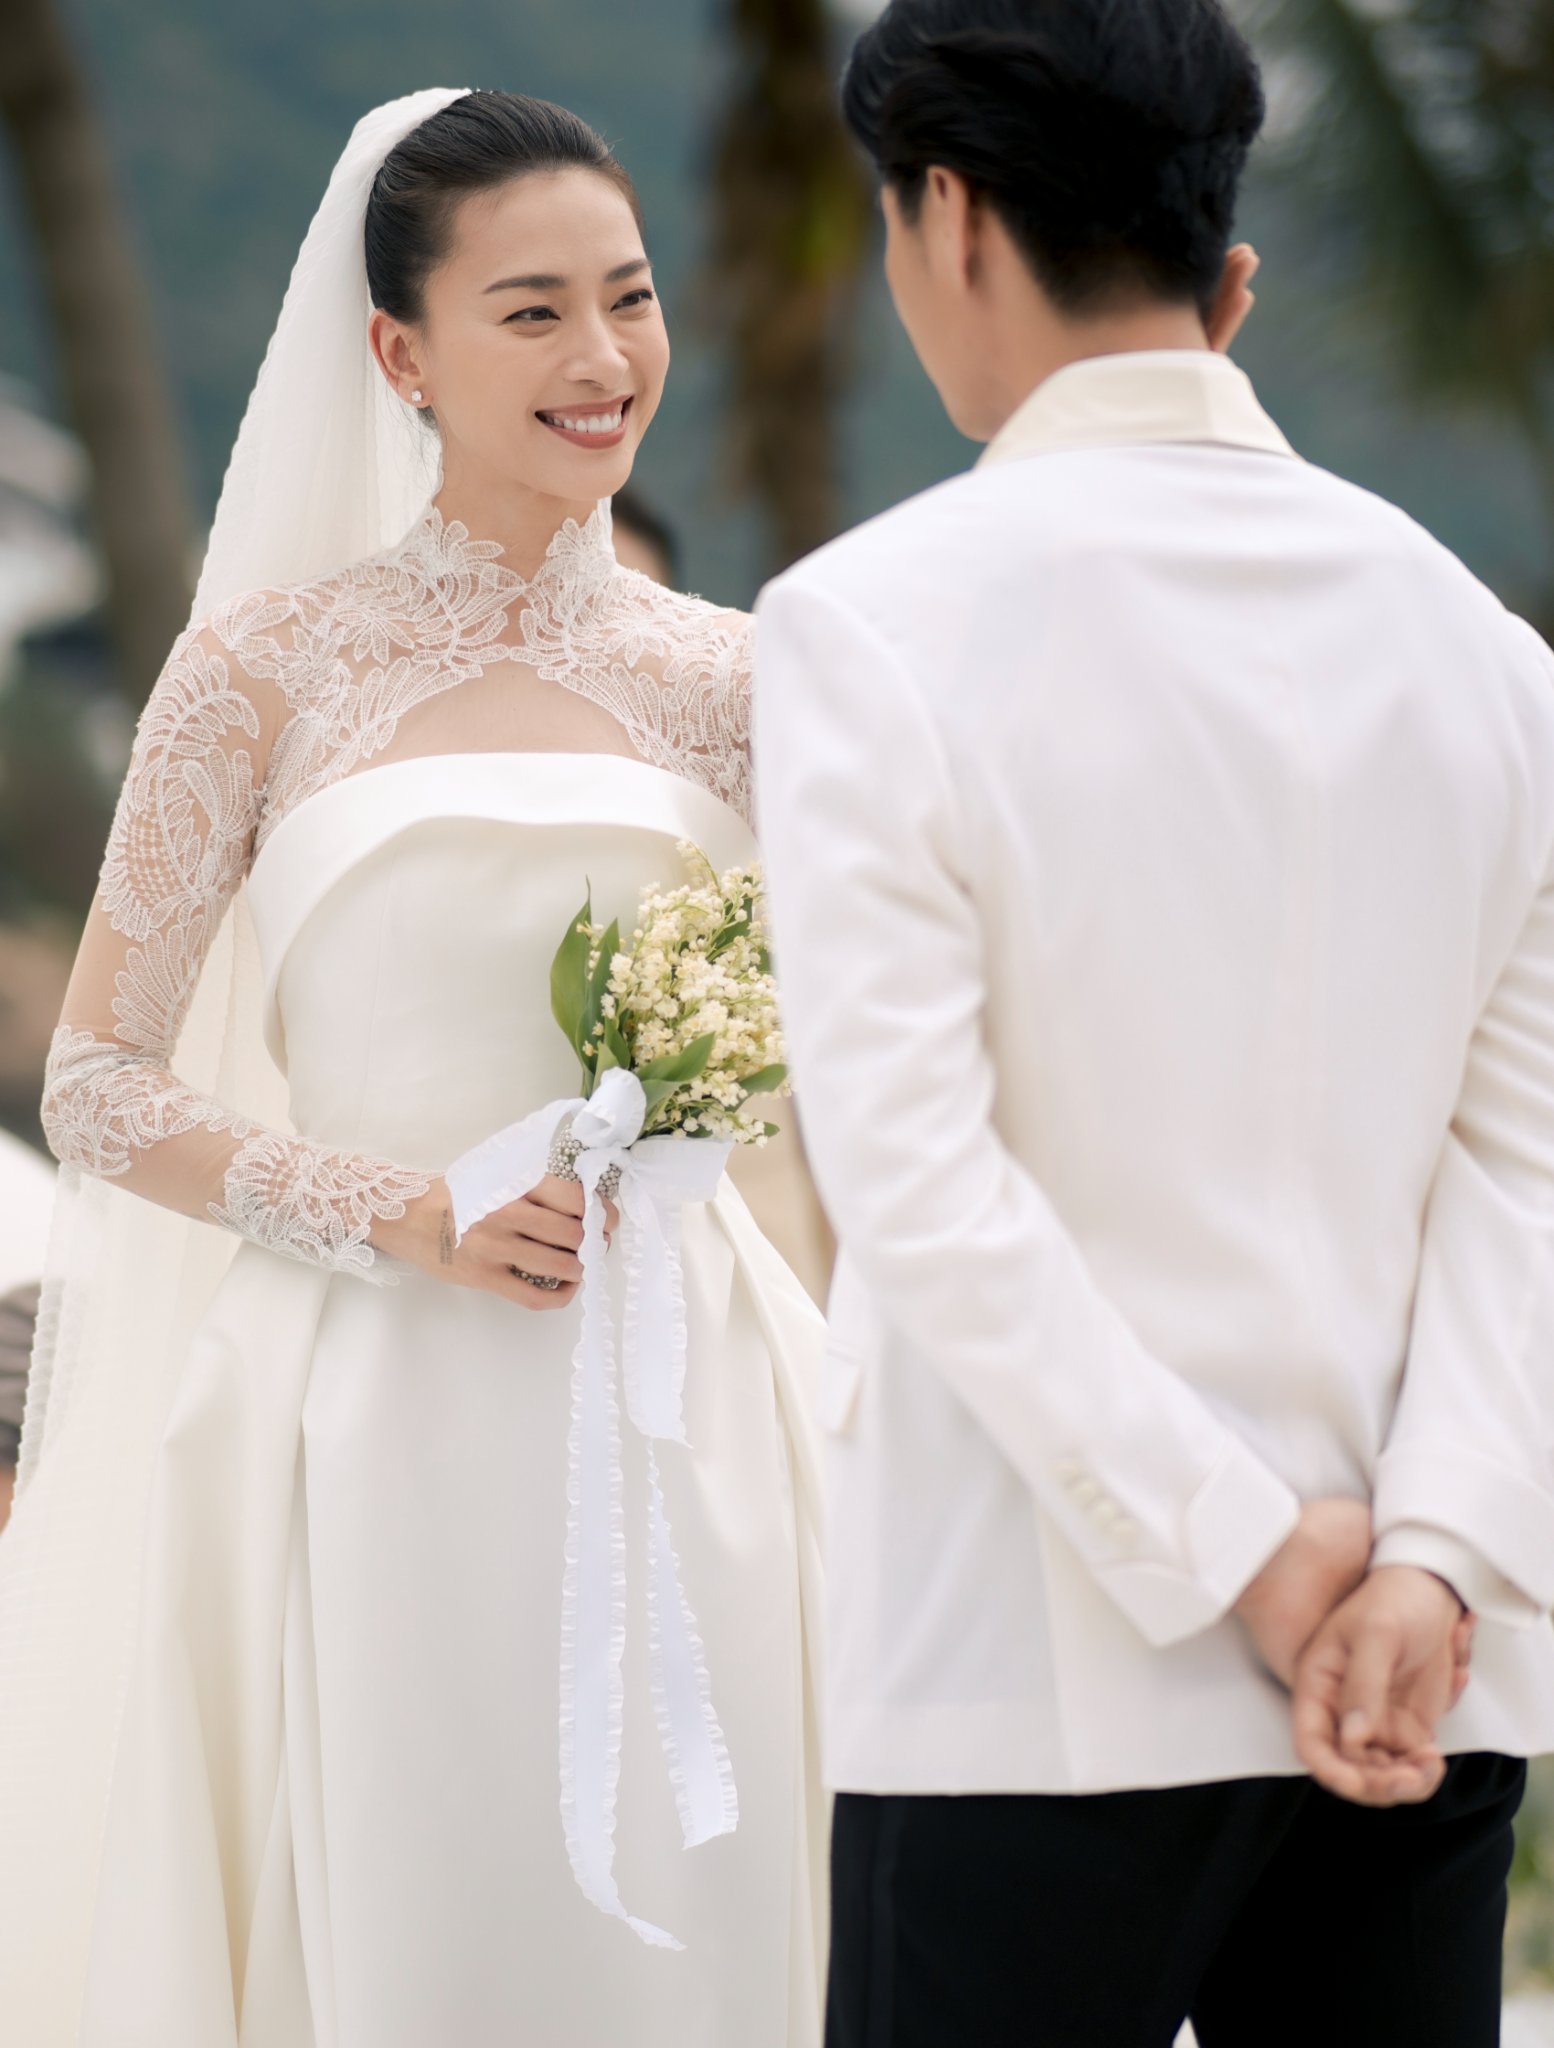 Chồng Ngô Thanh Vân bị chỉ trích vì đi trước để vợ chật vật cầm váy theo sau, thực hư thế nào?